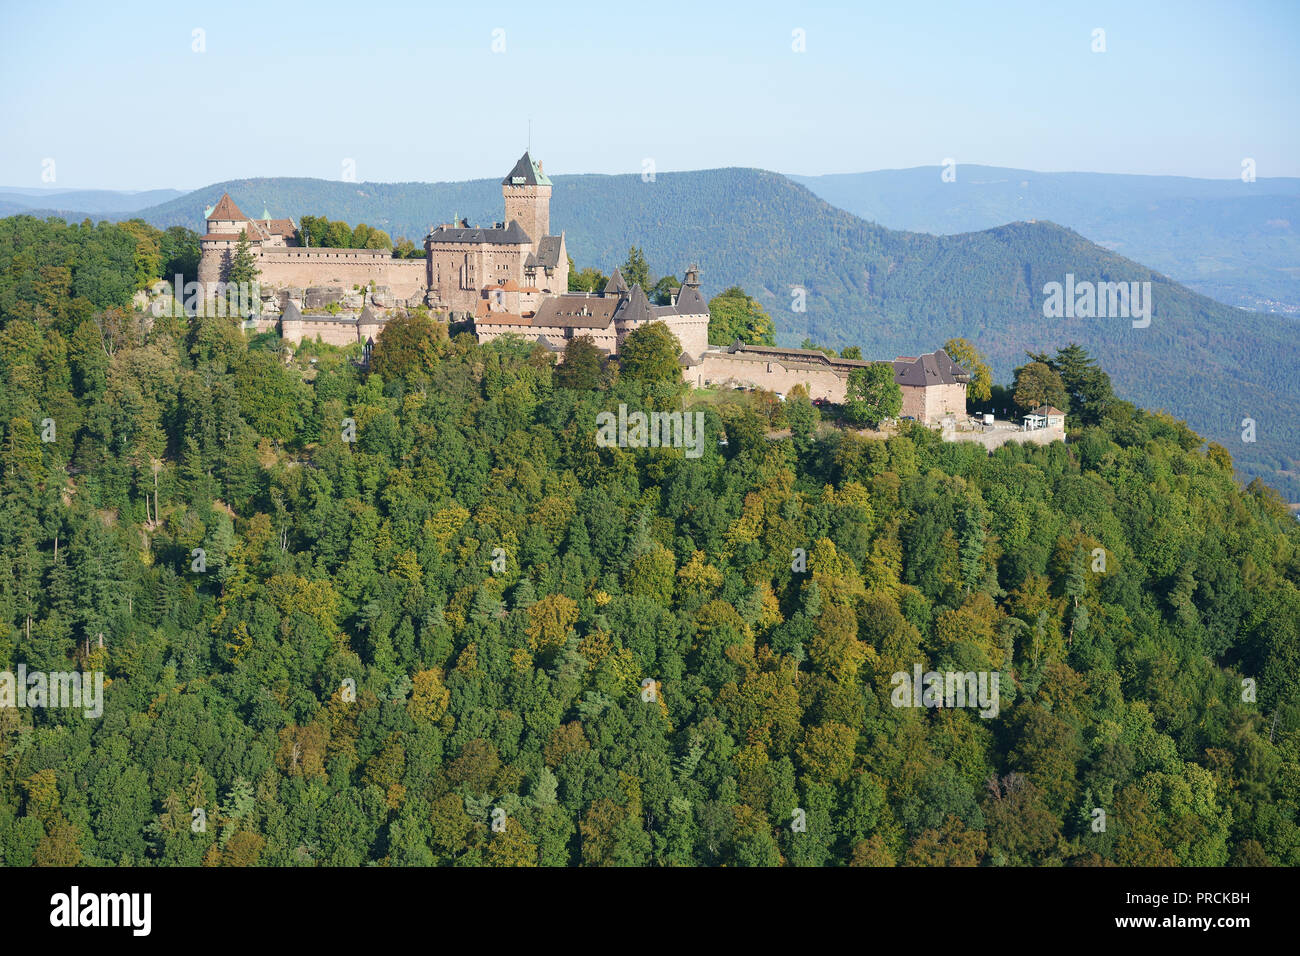 LUFTAUFNAHME. Rosa Sandstein mittelalterliche Burg auf einem bewaldeten Berggipfel. Burg Haut-Koenigsbourg, Orschwiller, Bas-Rhin, Elsass, Grand Est, Frankreich. Stockfoto